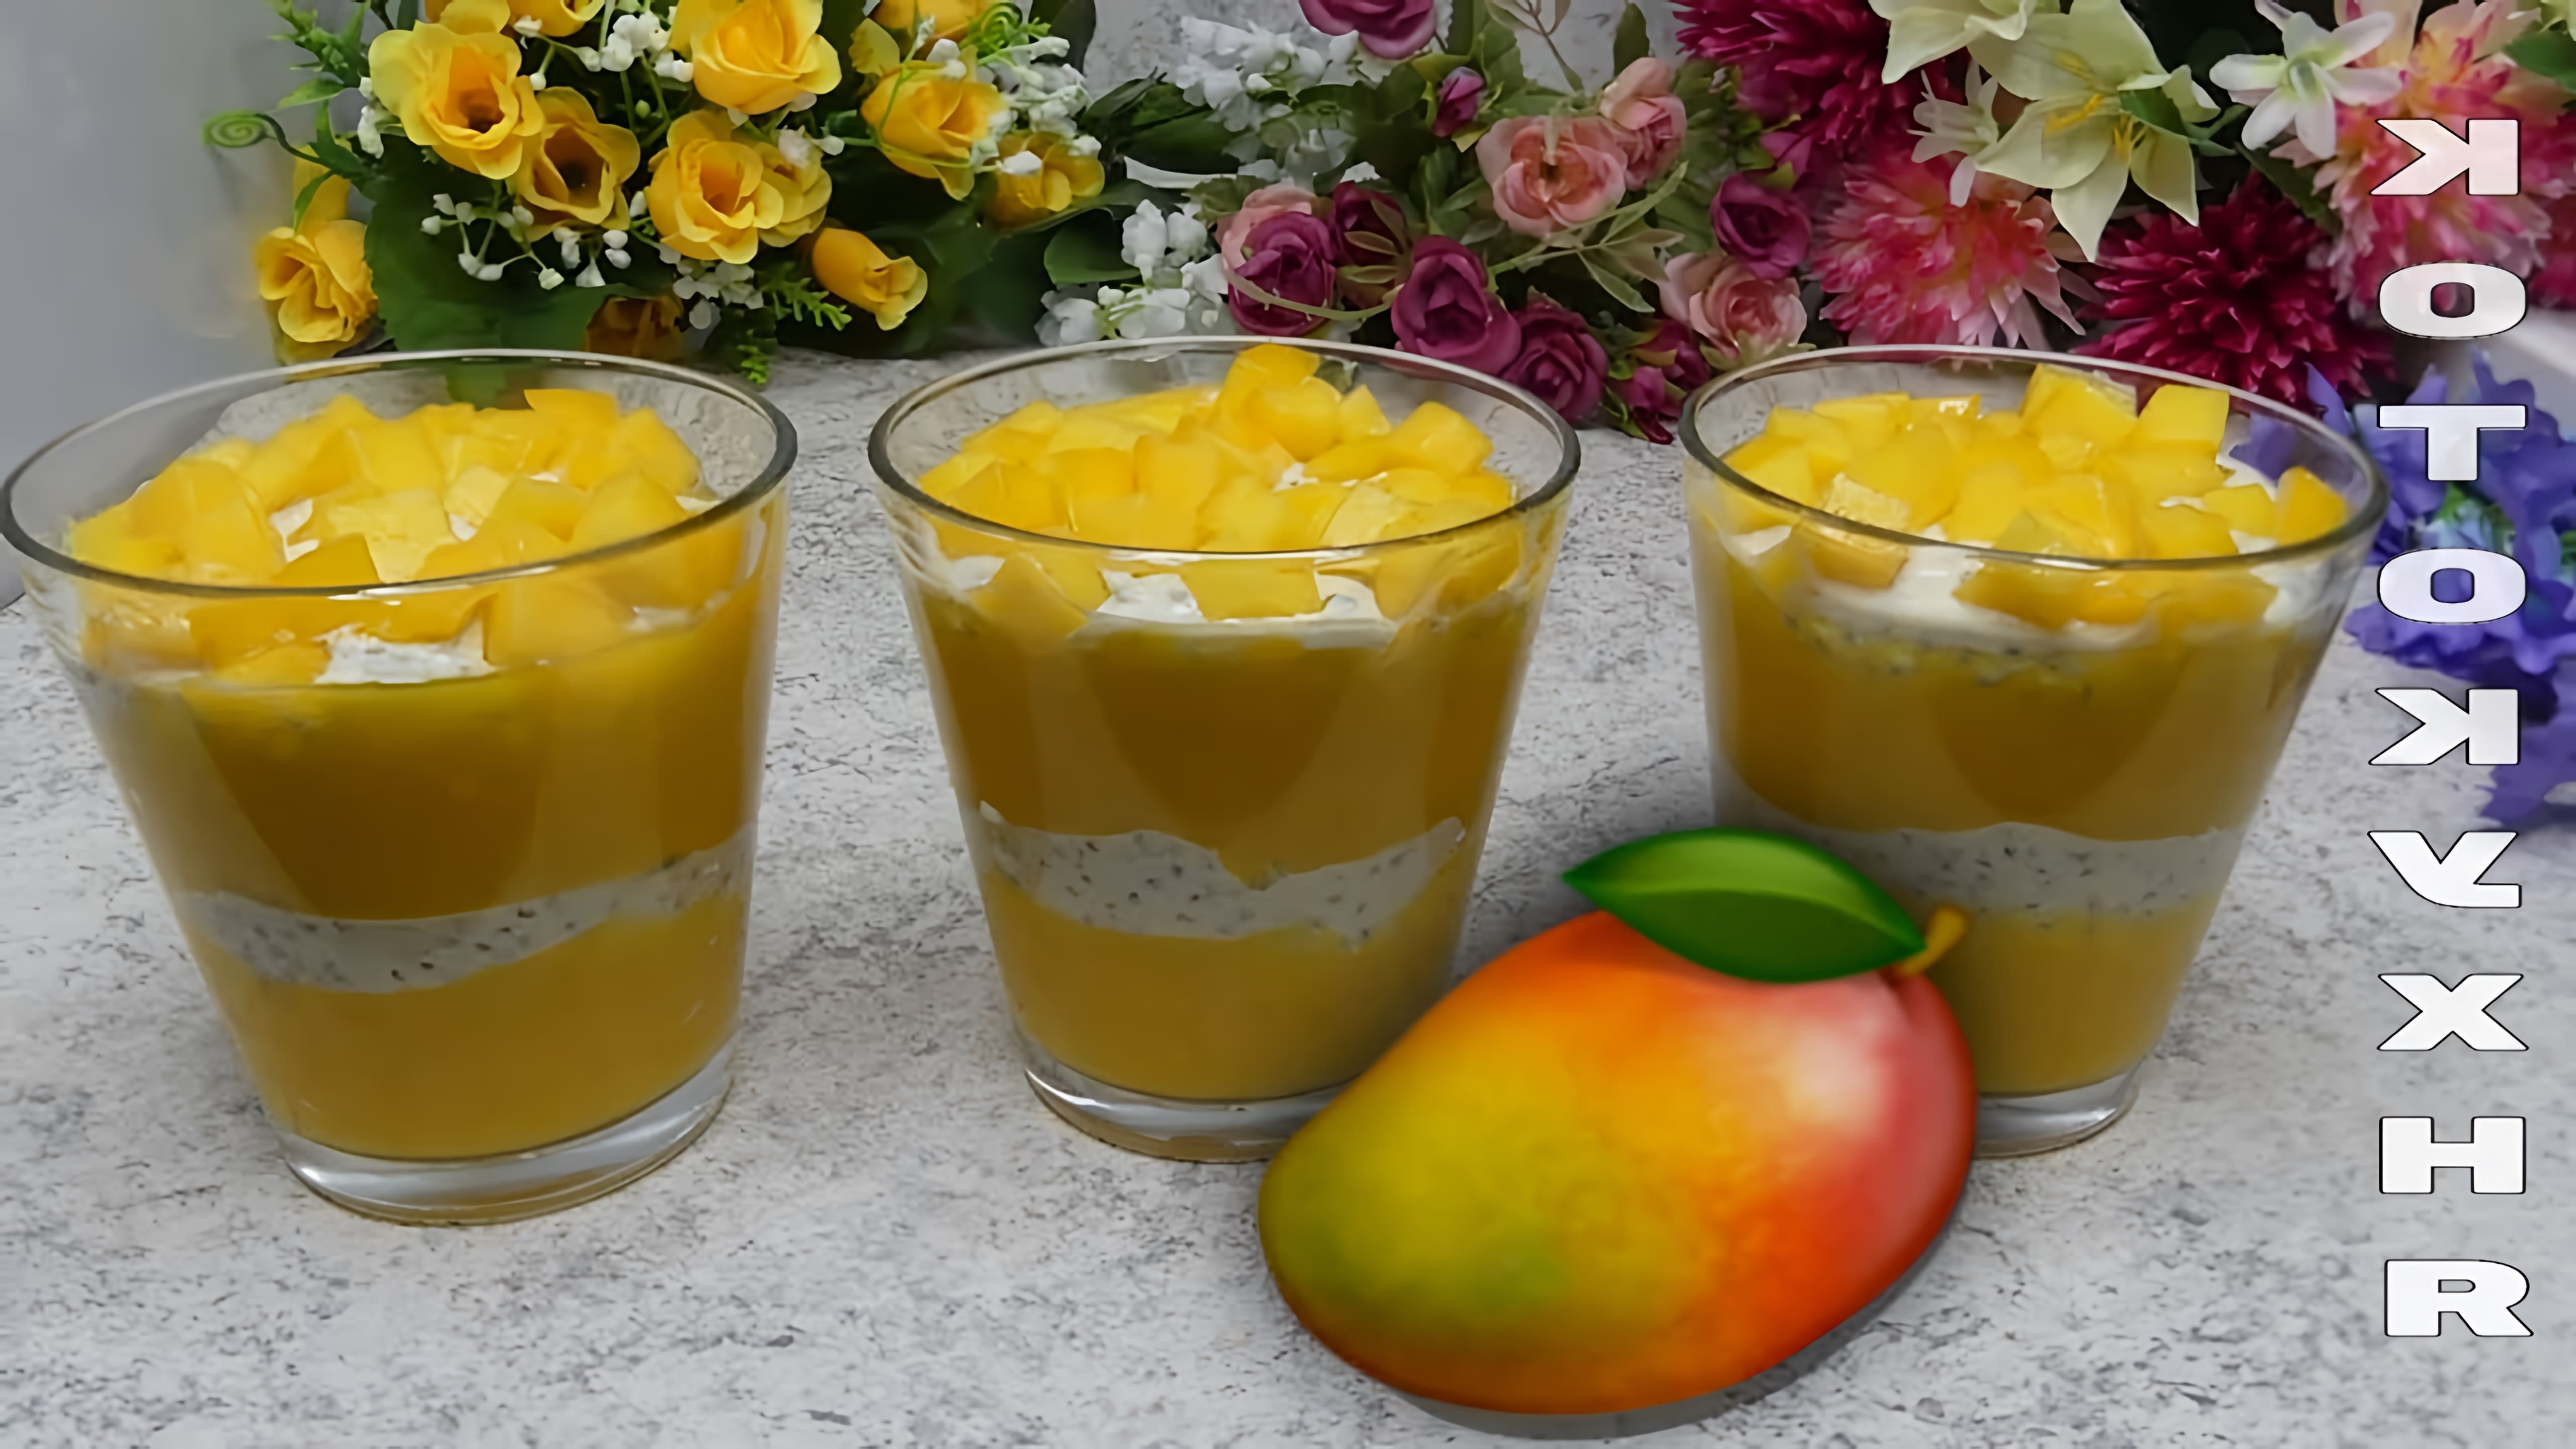 Полезный и вкусный десерт-пудинг со зрелым манго с греческим йогуртом и мёдом. На завтрак и для перекуса. 